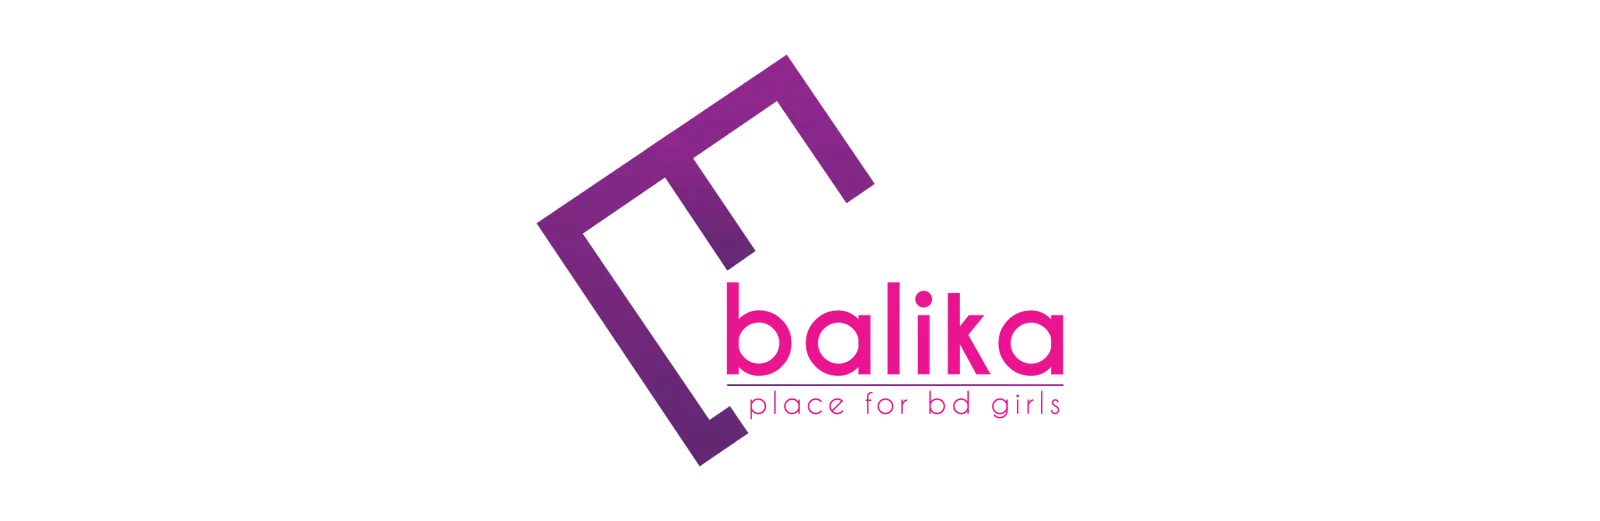 Balika logo